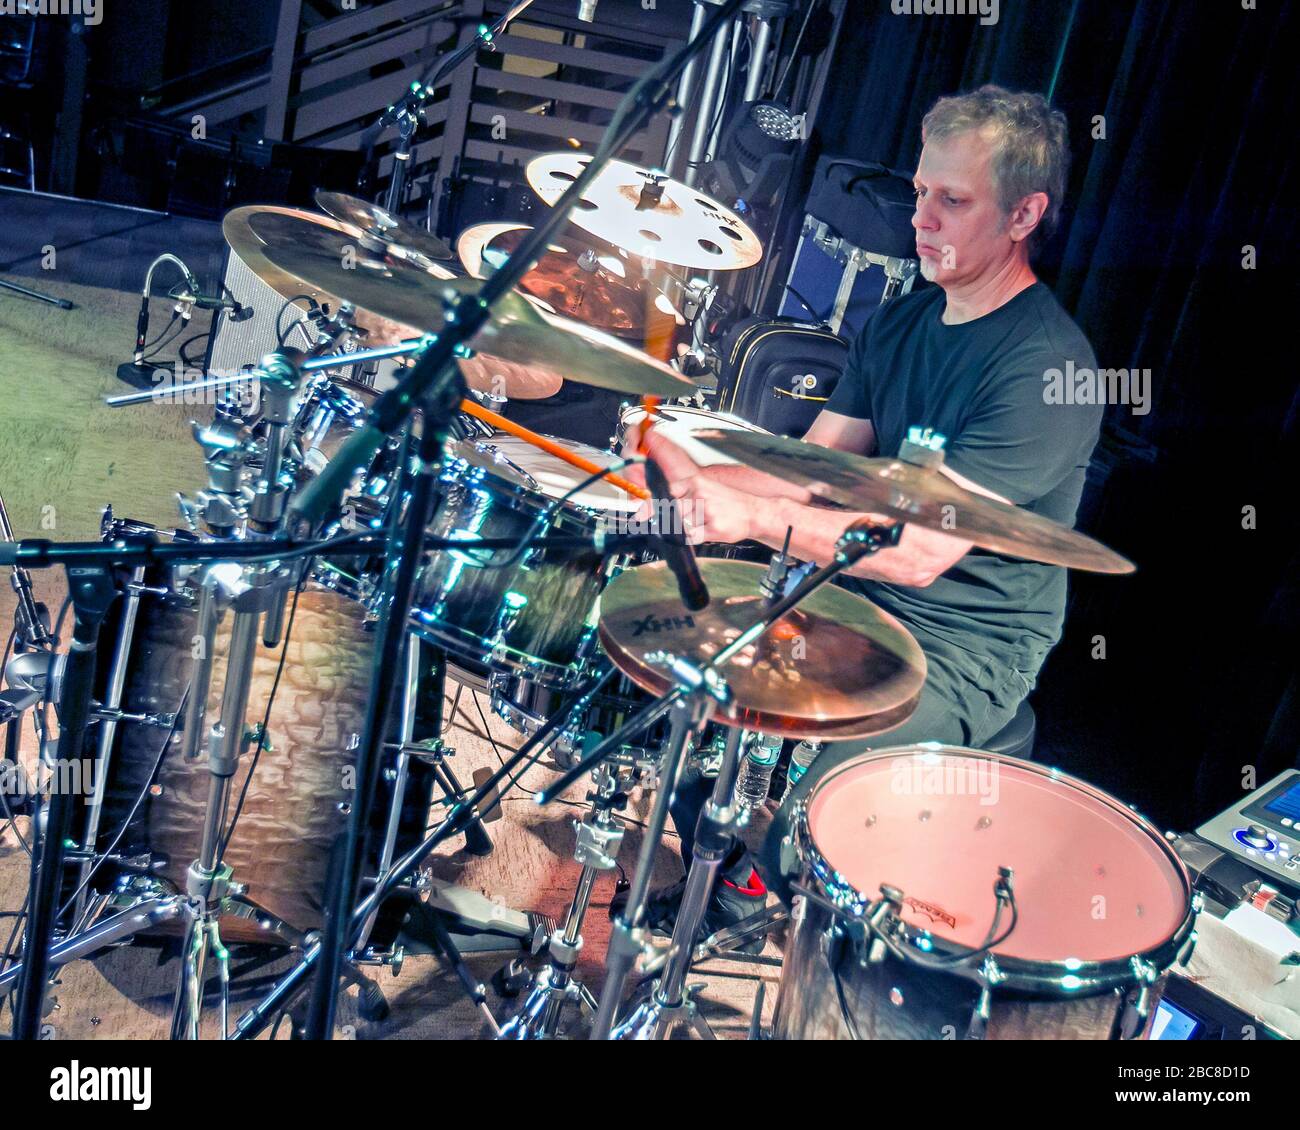 Schlagzeuger Dave Weckl wärmt sich vor einem Auftritt mit Oz Noy am 3rd und Lindsley in Nashville, Tennessee auf. Stockfoto